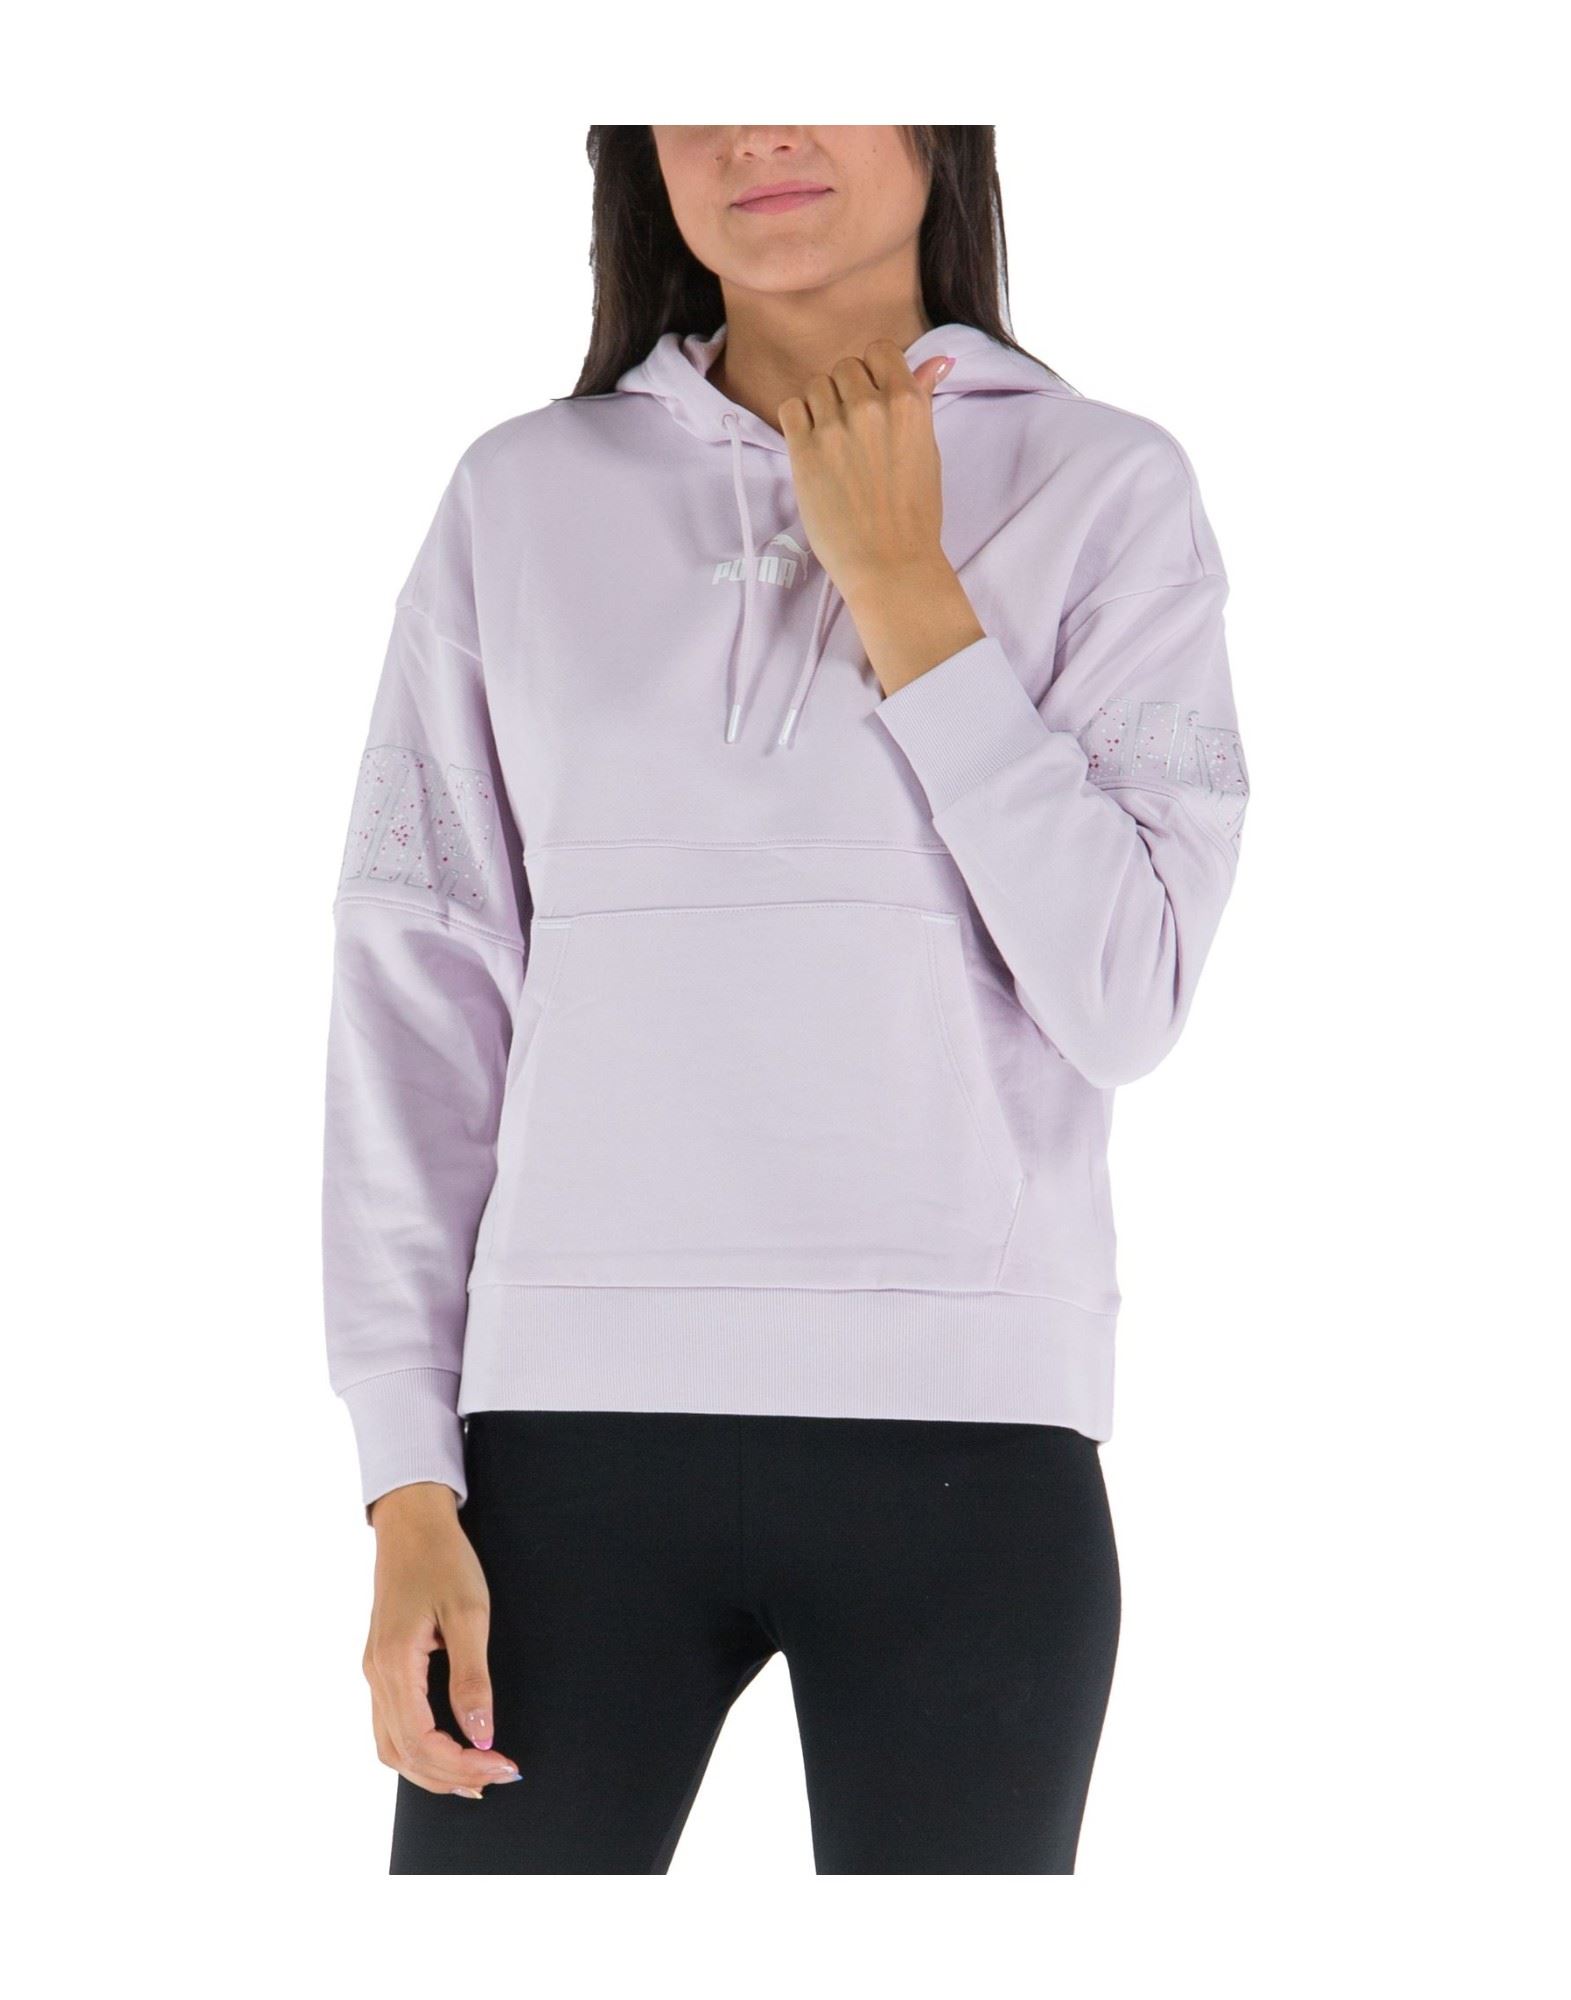 PUMA Sweatshirt Damen Violett von PUMA